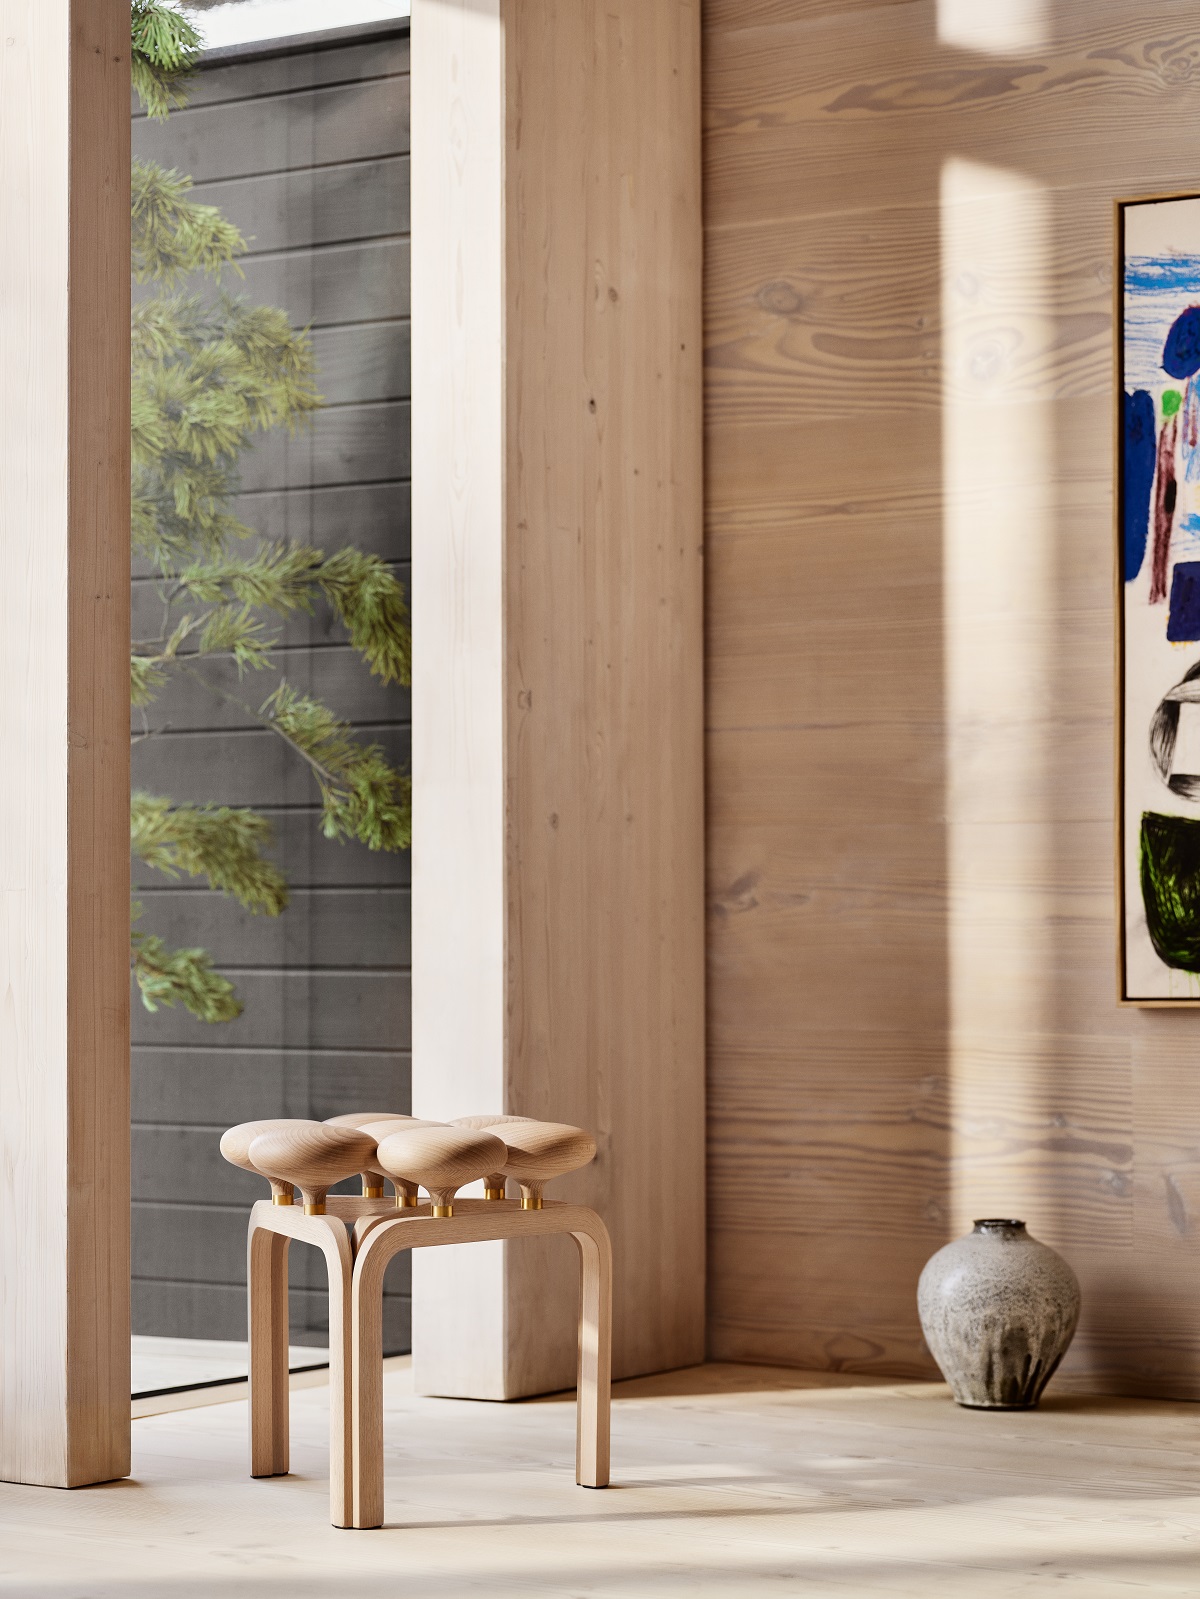 Utzon wooden chair in front of floor to ceiling window in minimalist interior